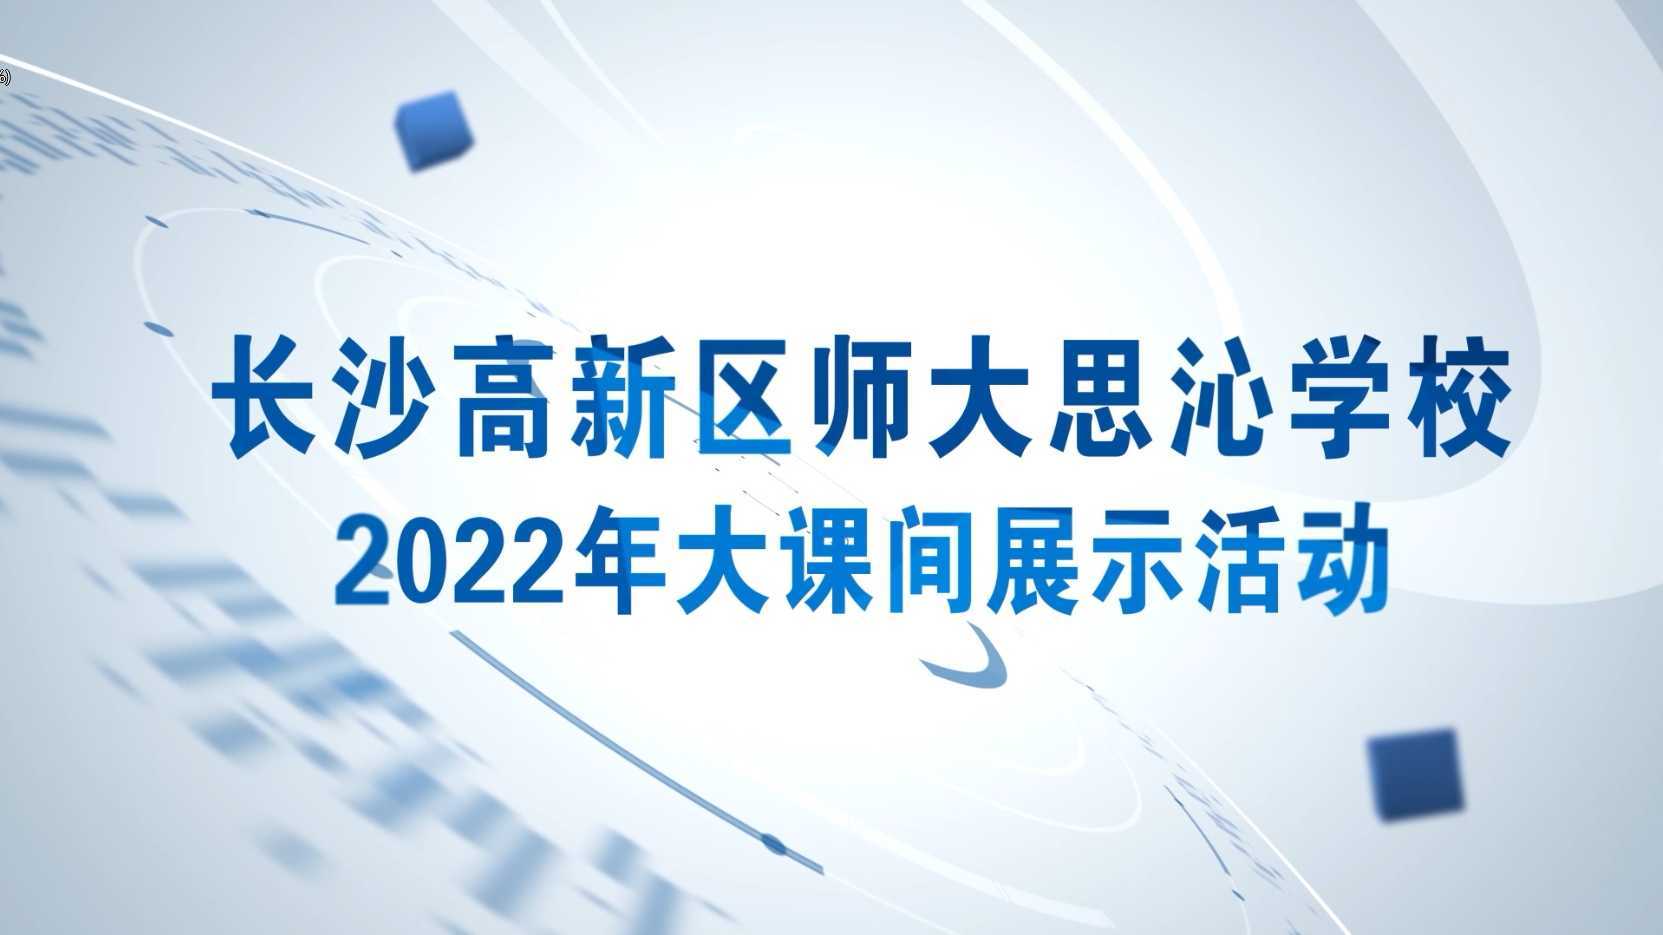 长沙高新区师大思沁学校2022年大课间展示活动